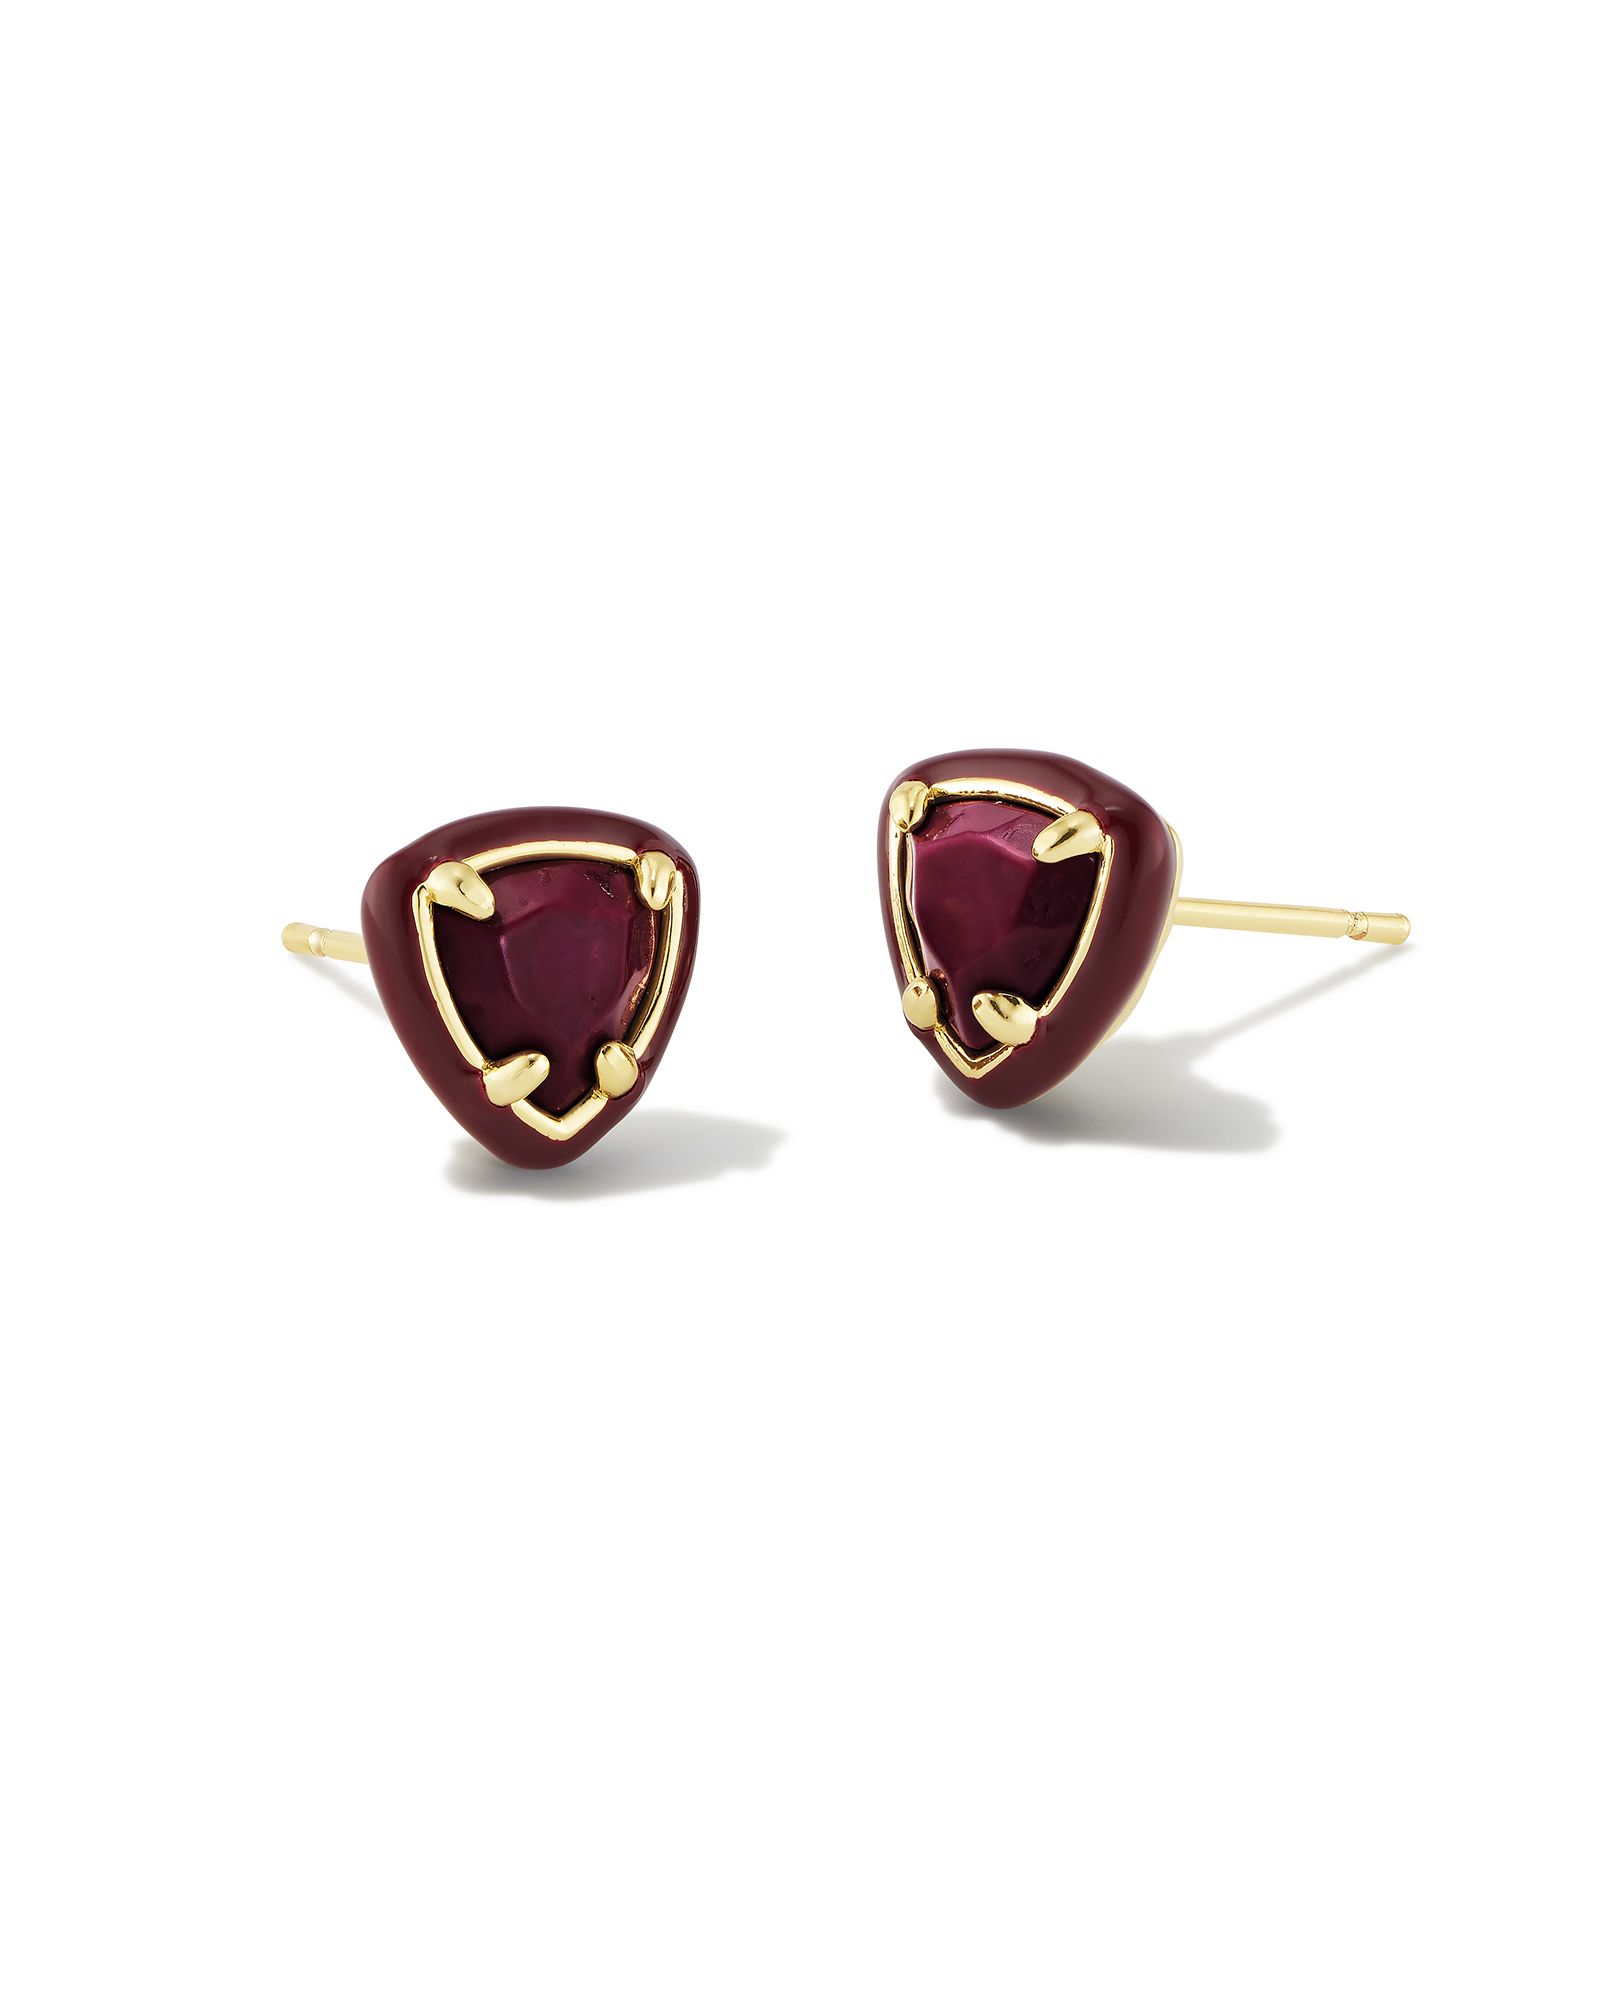 Arden Gold Enamel Framed Stud Earrings in Maroon Magnesite | Kendra Scott